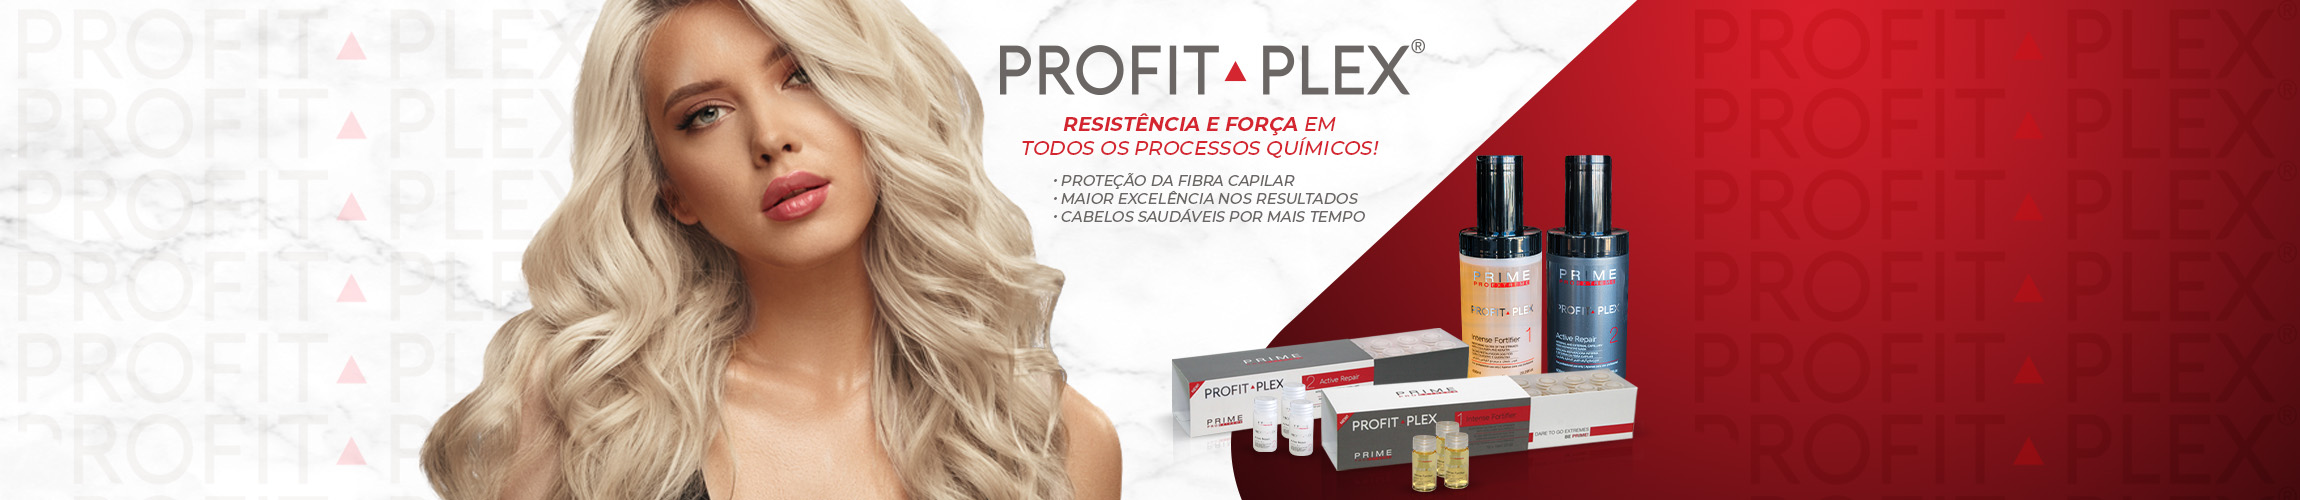 Profit Plex - Prime Pro Extreme